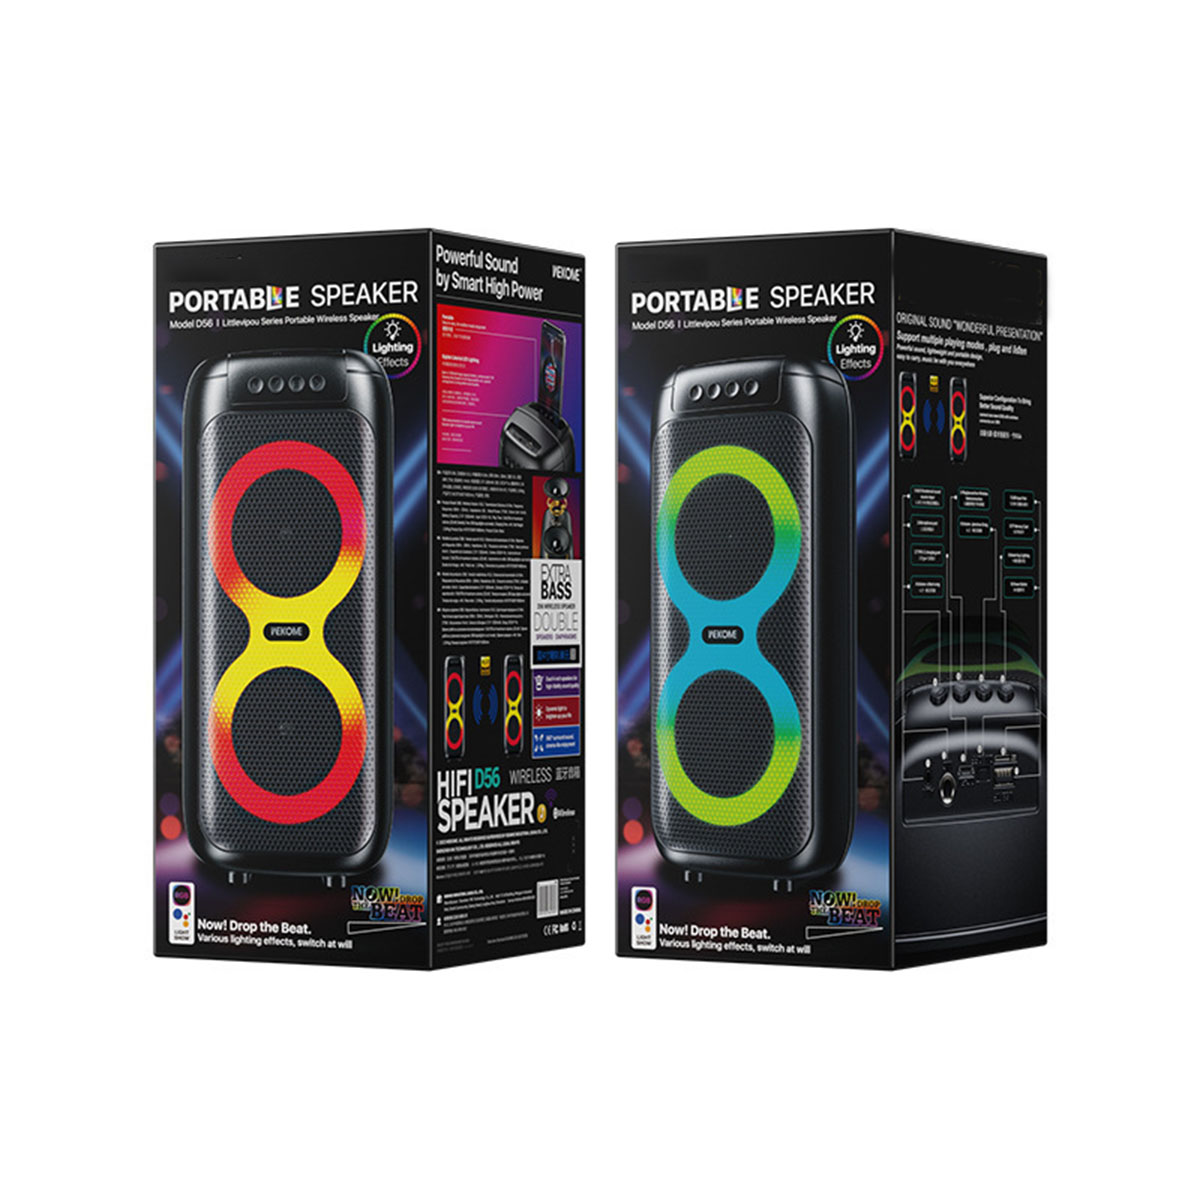 BRIGHTAKE Dazzle - Speaker Grad Effect schwarz Outdoor Karaoke Light 360 Stereo Bluetooth-Lautsprecher, Sound Bluetooth Lautsprecher Color